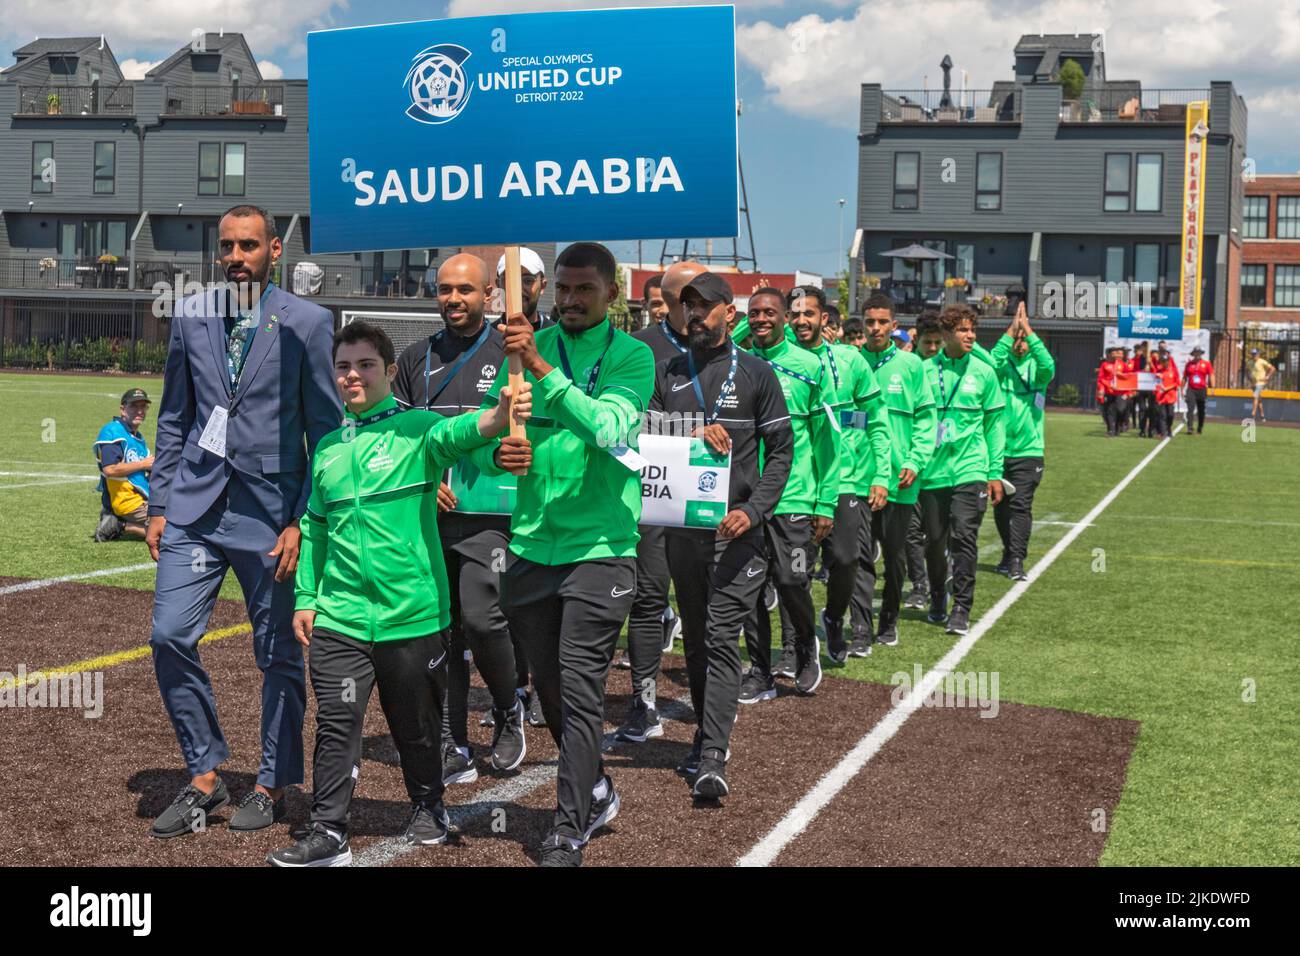 Detroit, Michigan, EE.UU. 31st de julio de 2022. El equipo masculino de Arabia Saudita marcha en el campo al comienzo del torneo de fútbol de la Copa Unificada de los Juegos Olímpicos Especiales. La Copa unificada empareja atletas con y sin discapacidades intelectuales como compañeros de equipo. Crédito: Jim West/Alamy Live News Foto de stock